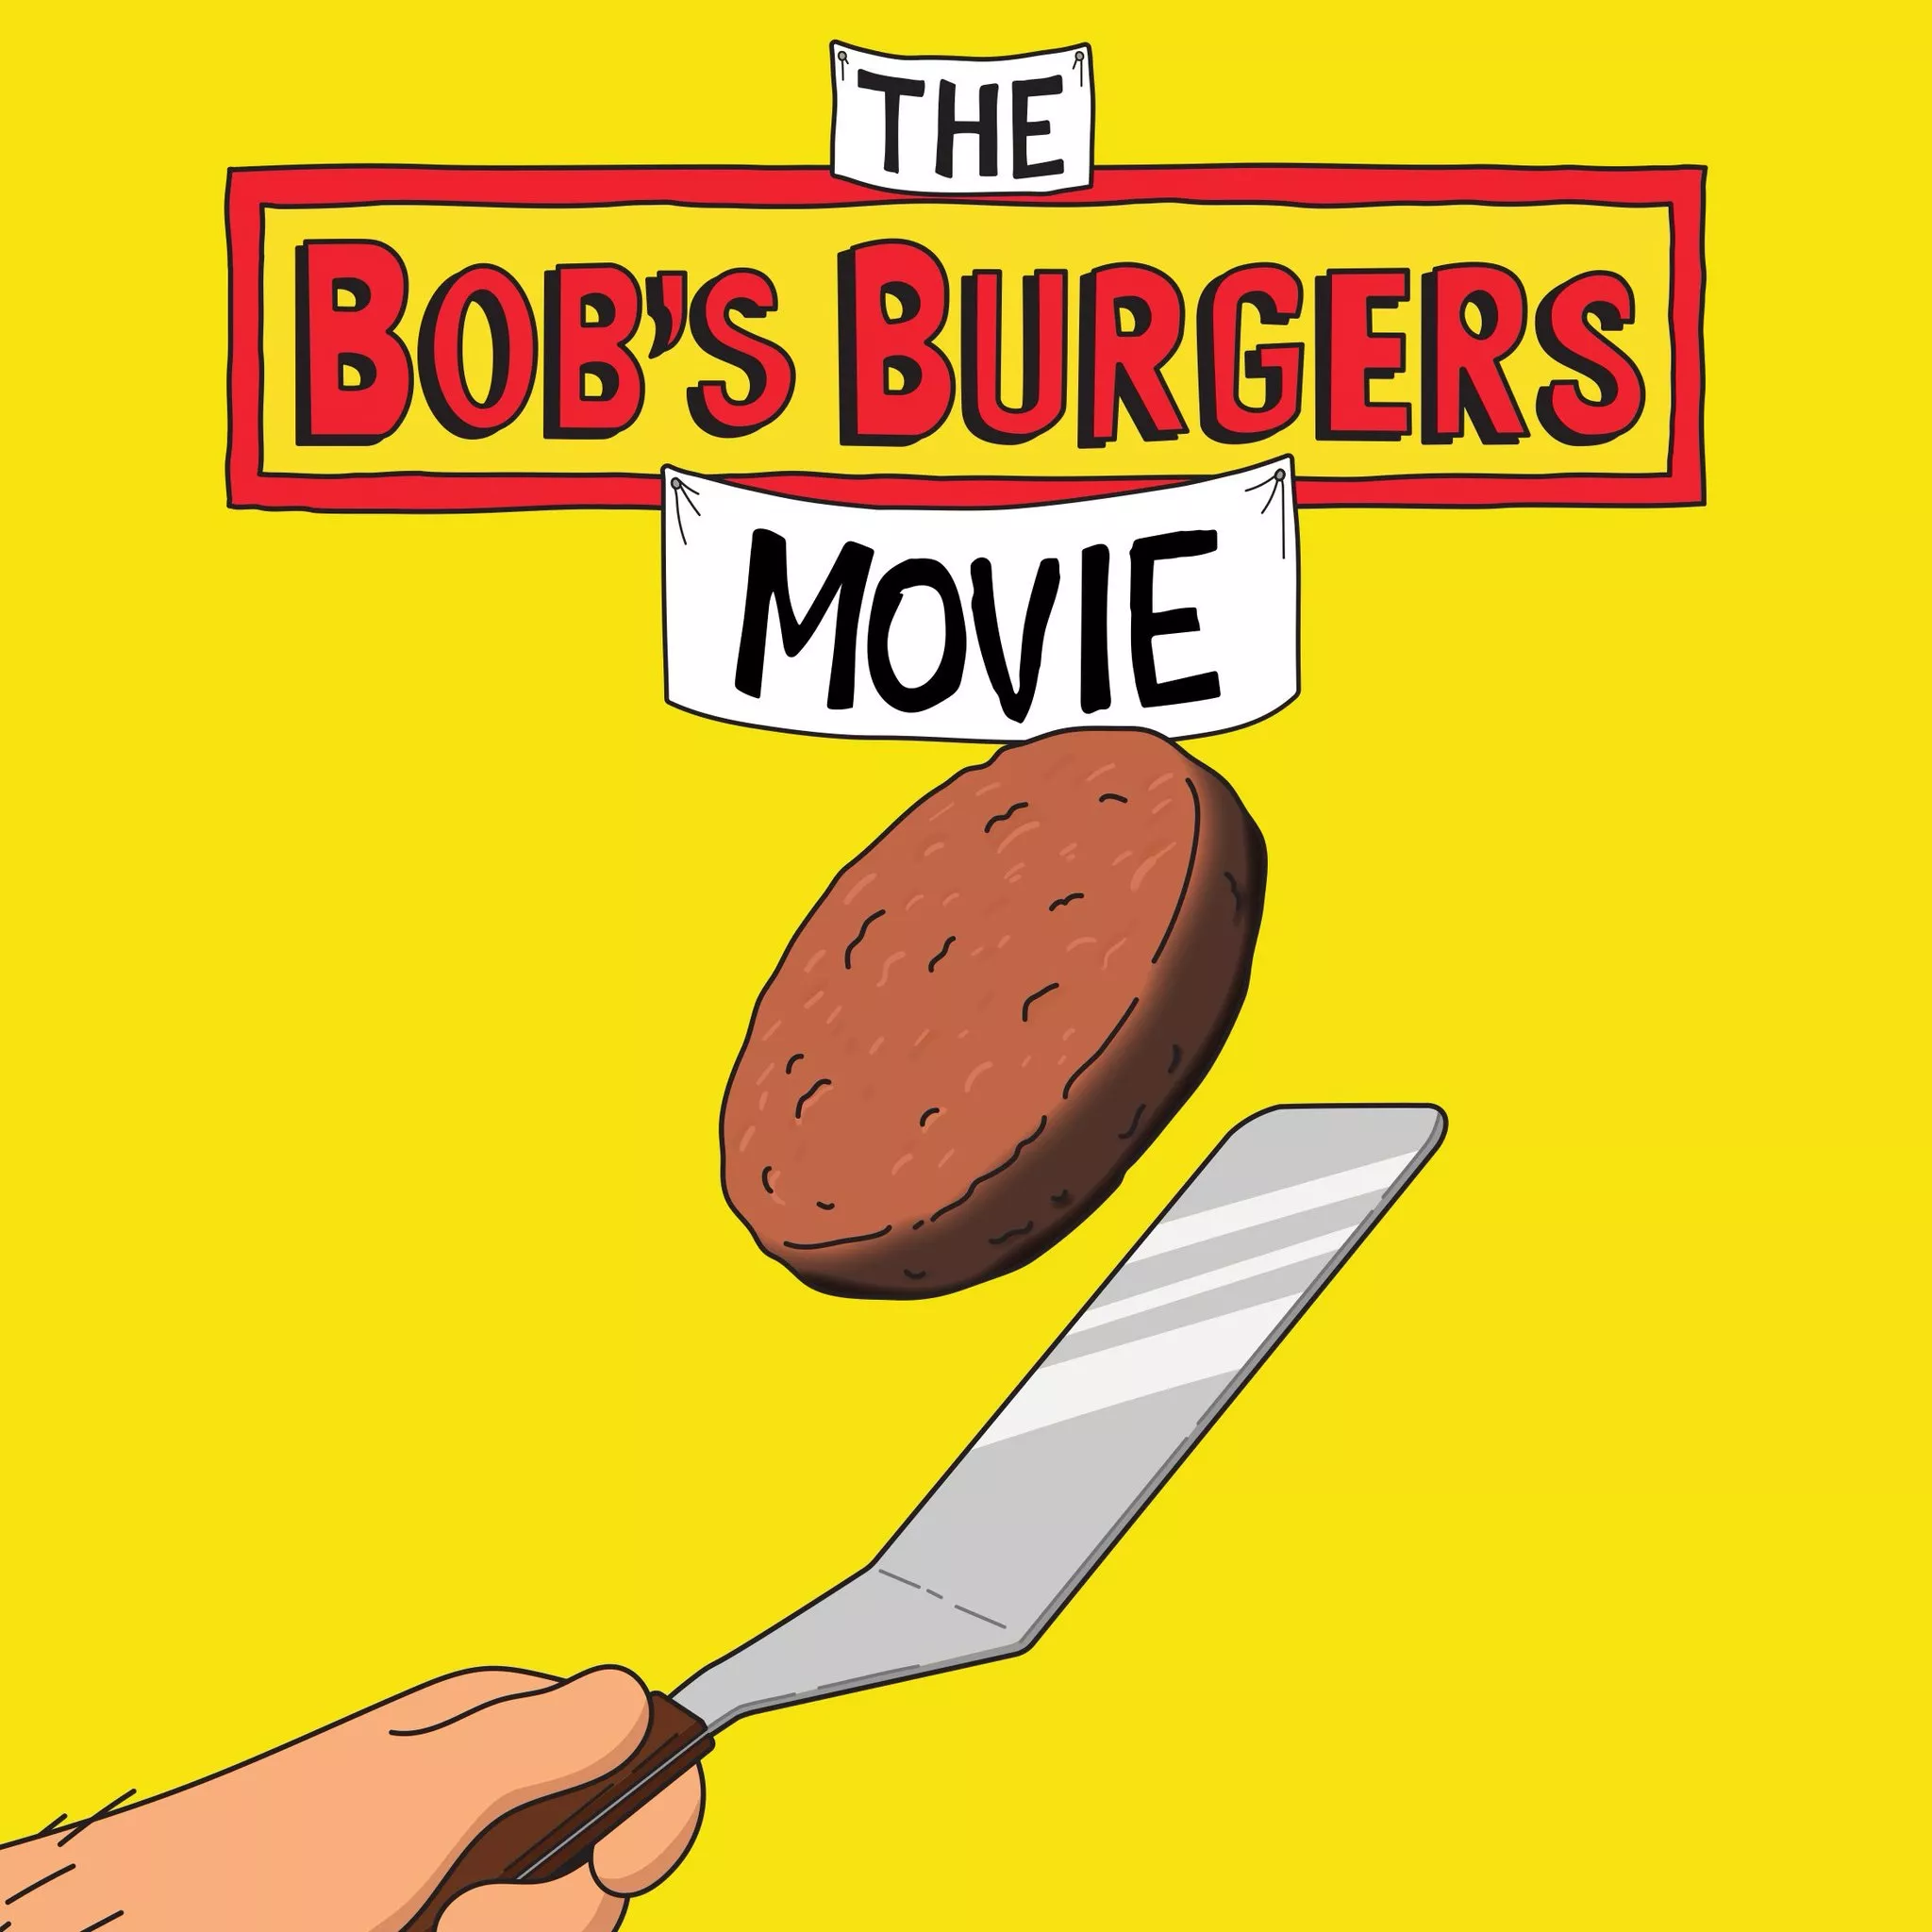 image ce1ac90a 71ad 4e6f 8d23 e1143d622a32 Filme de Bob’s Burgers tem data de estreia marcada para maio de 2022.